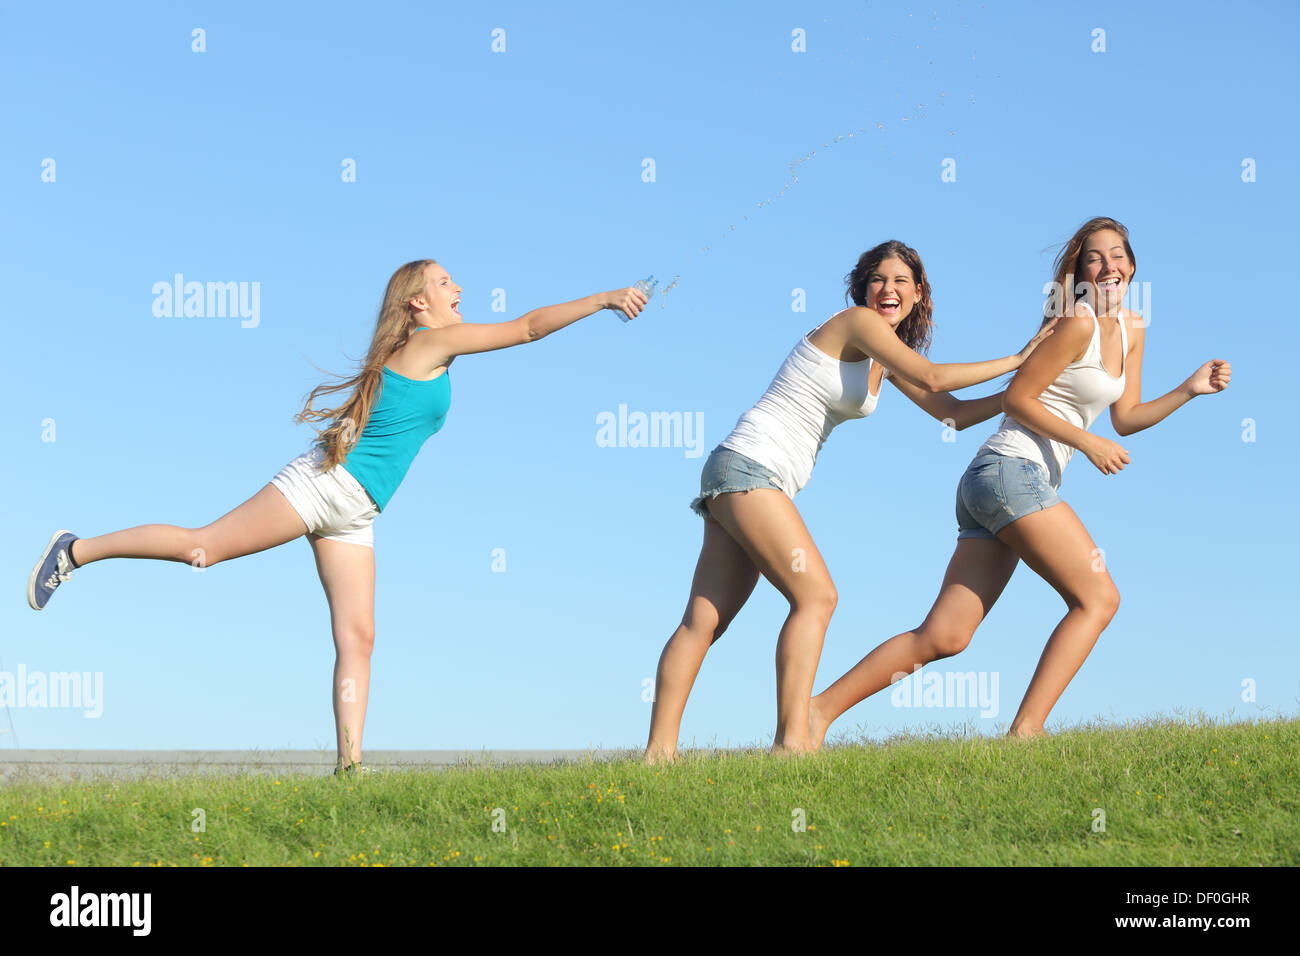 Groupe d'adolescent girls playing heureux jetant de l'eau sur l'herbe avec le ciel en arrière-plan Banque D'Images